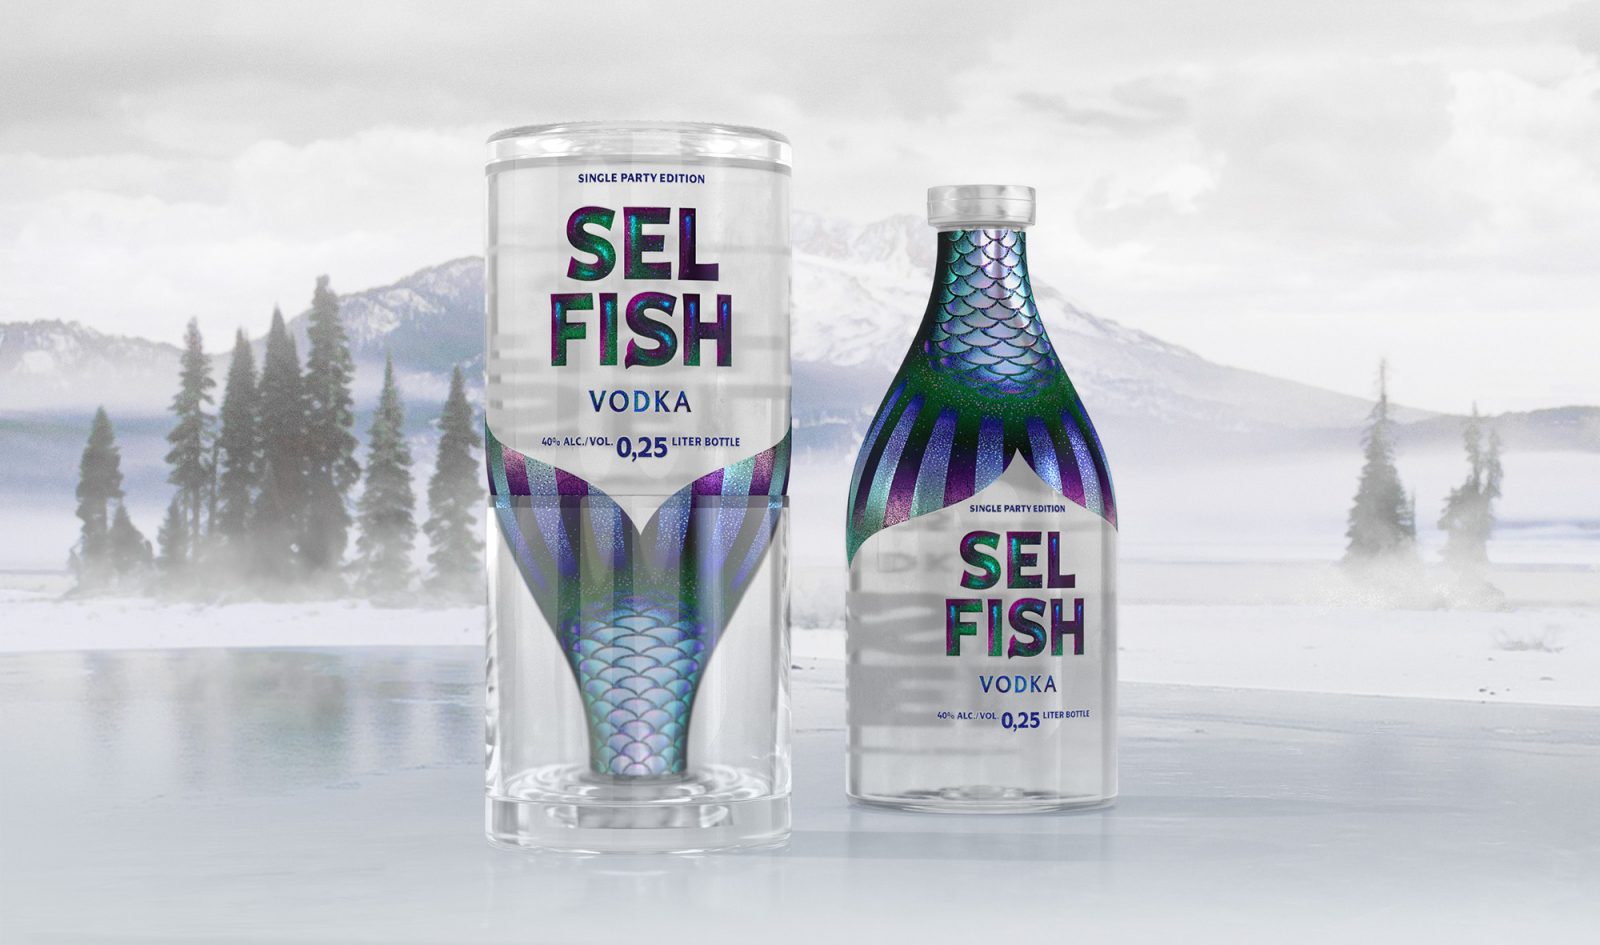 ‘Selfish’ Intriguing Design for Vodka